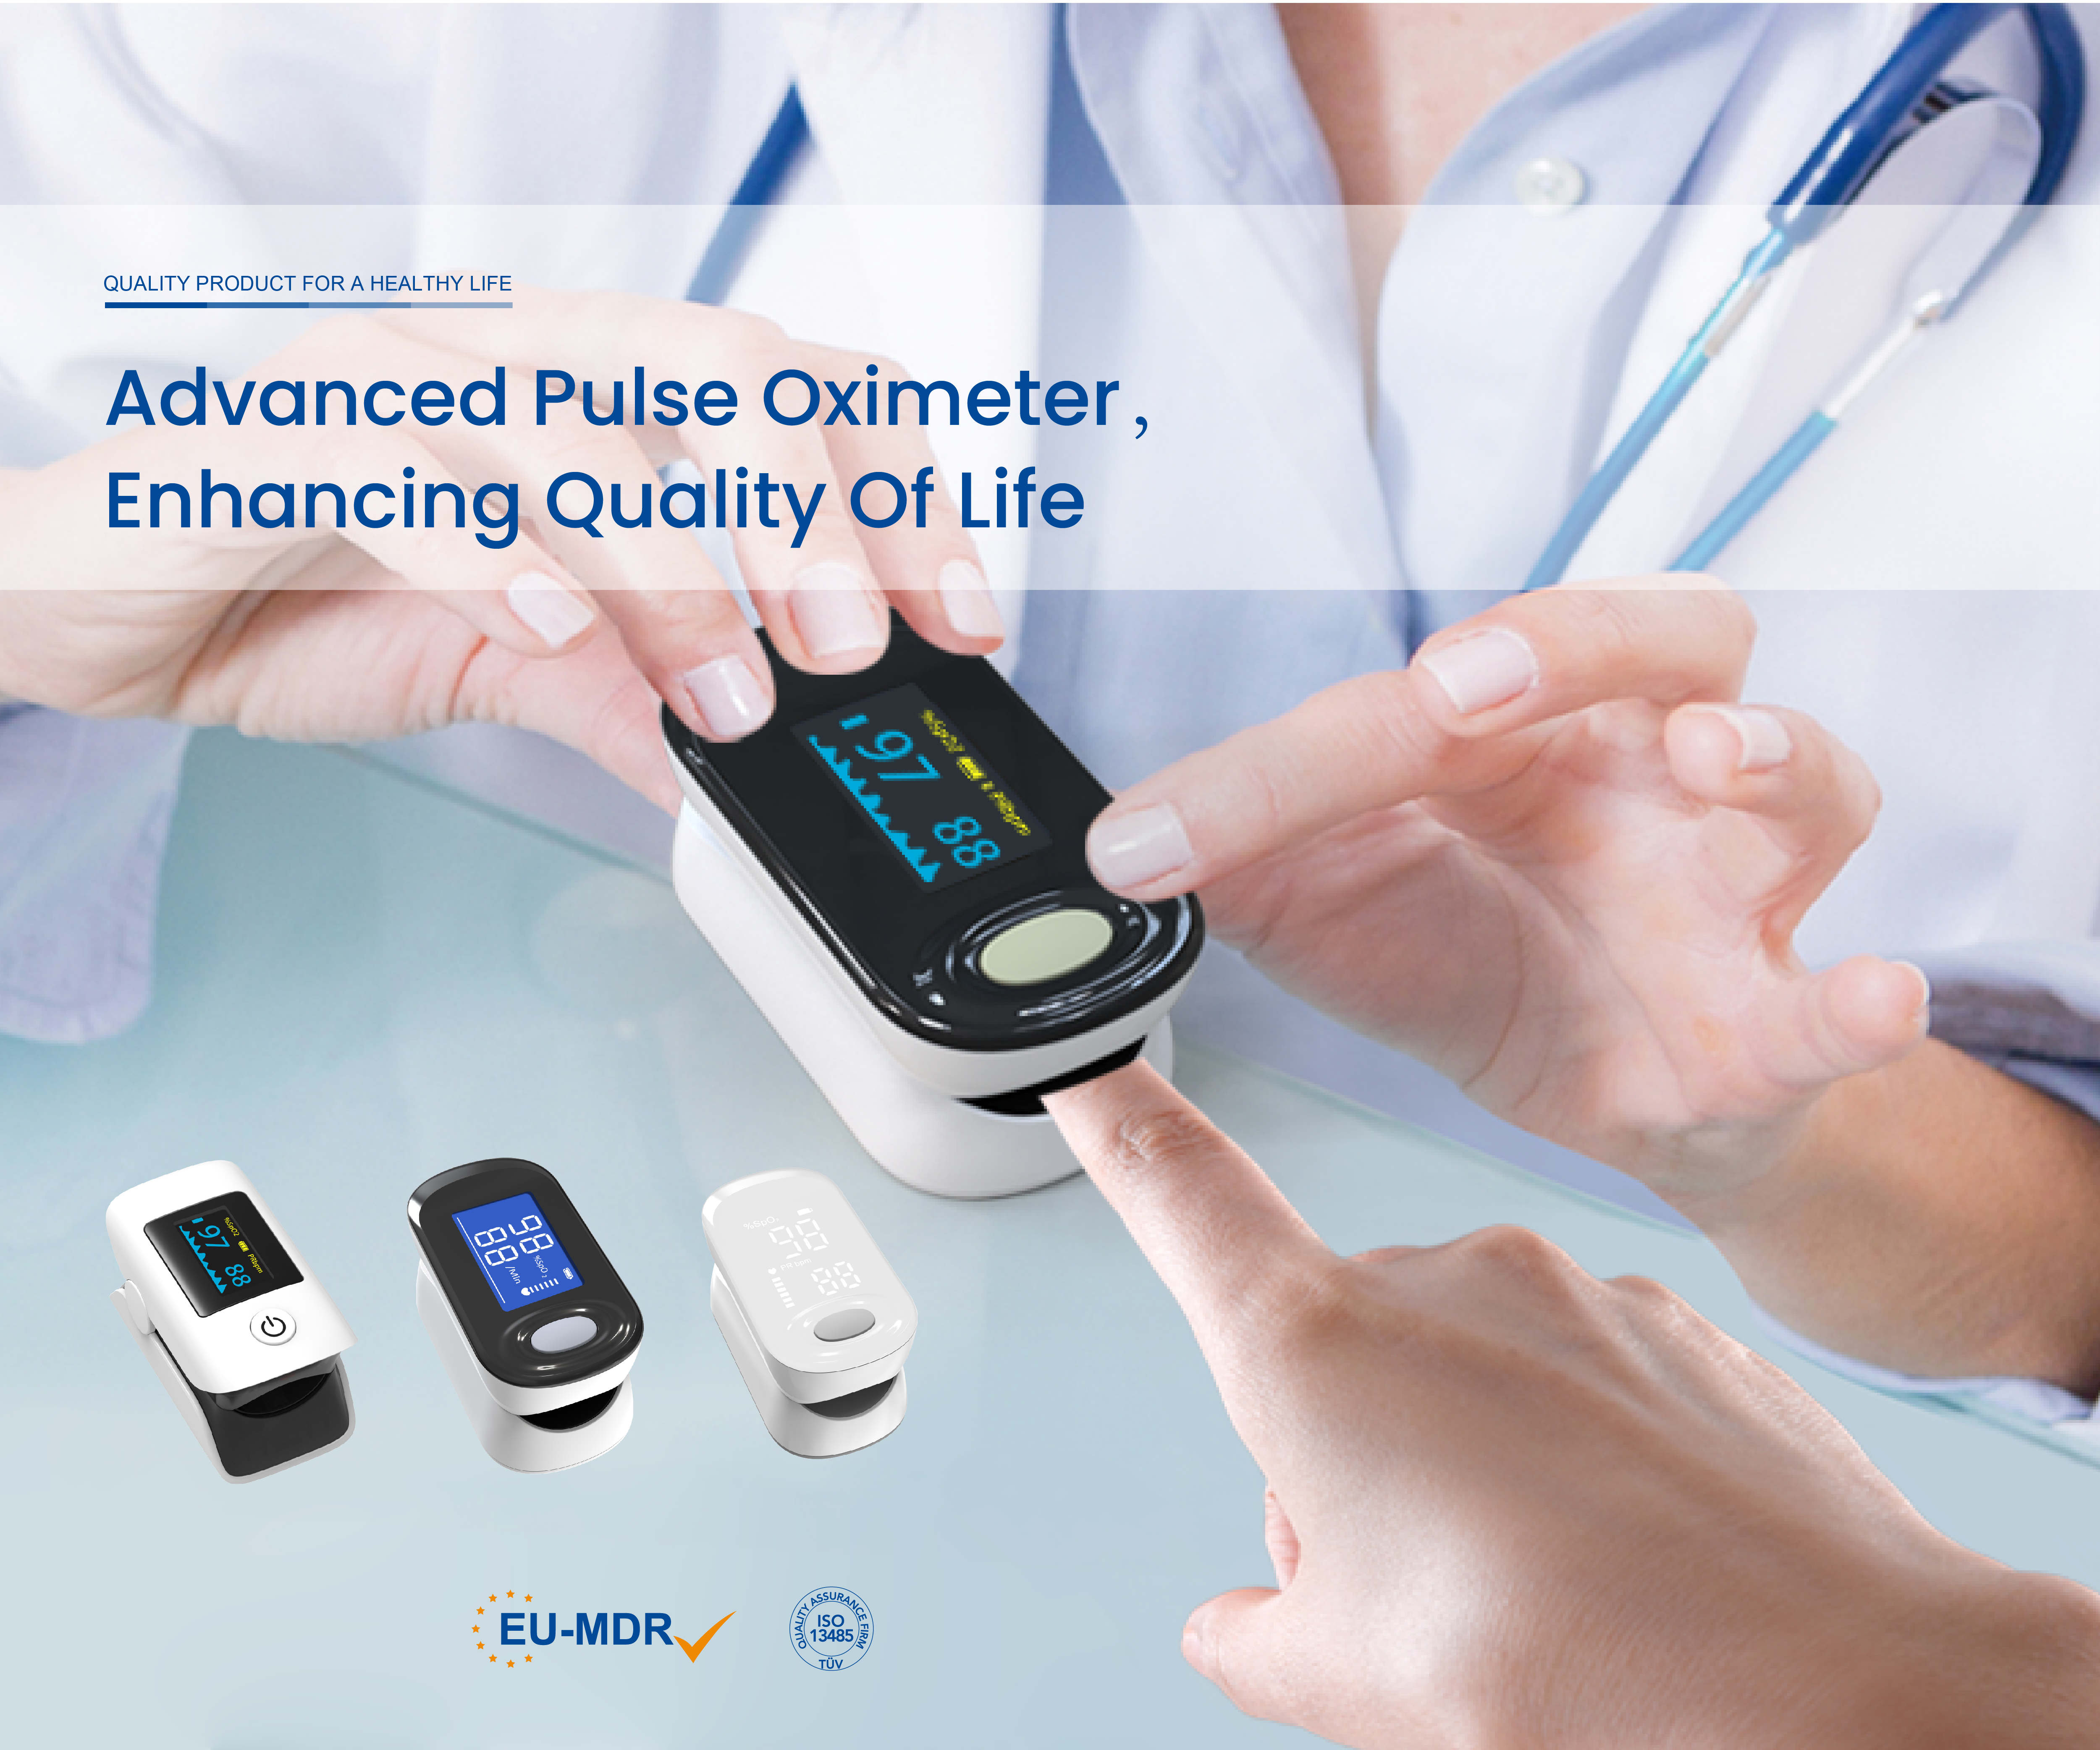 Prosit lil Joytech Healthcare talli kisbet iċ-Ċertifikazzjoni CE MDR għall-Oximeters tal-Pulse fingertip!